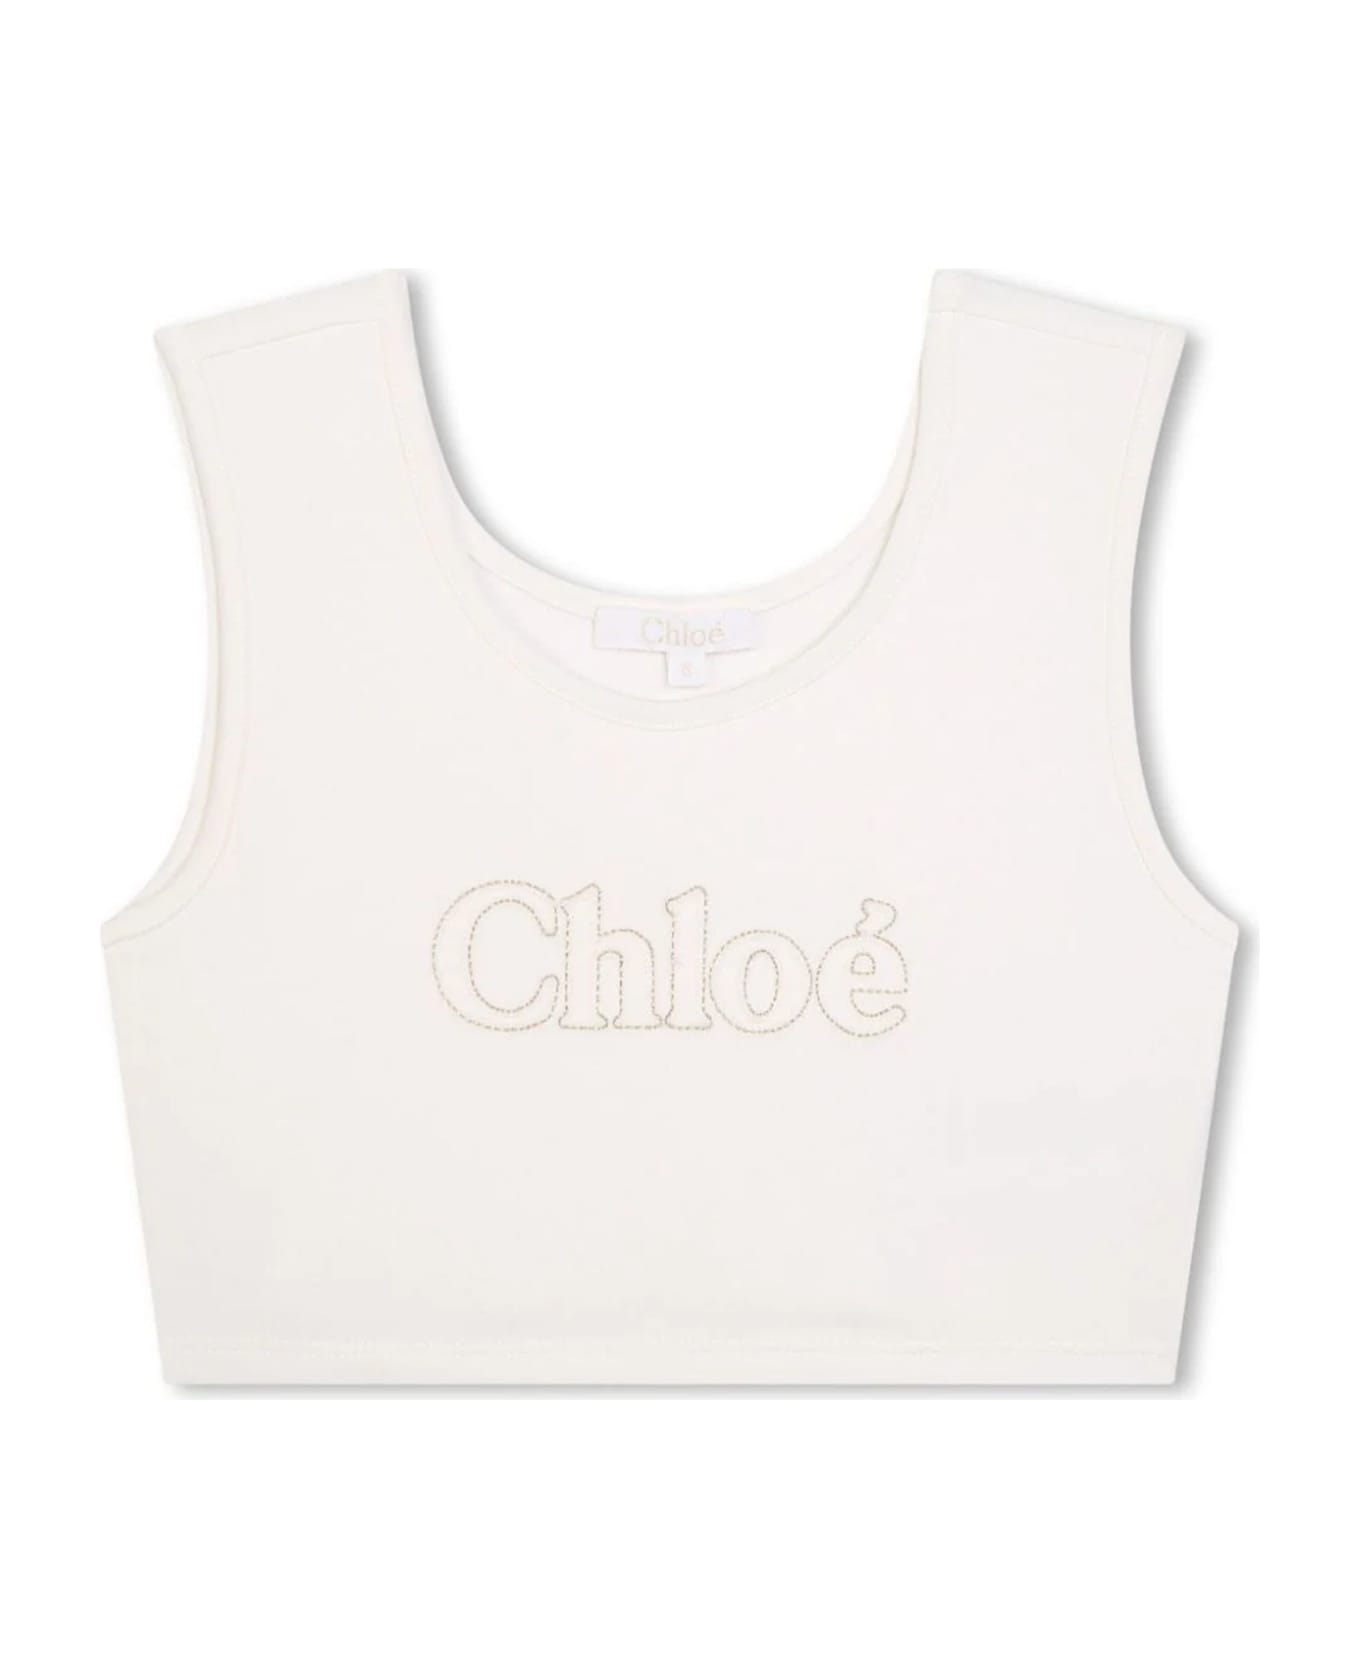 Chloé Chloè Kids Top White - White